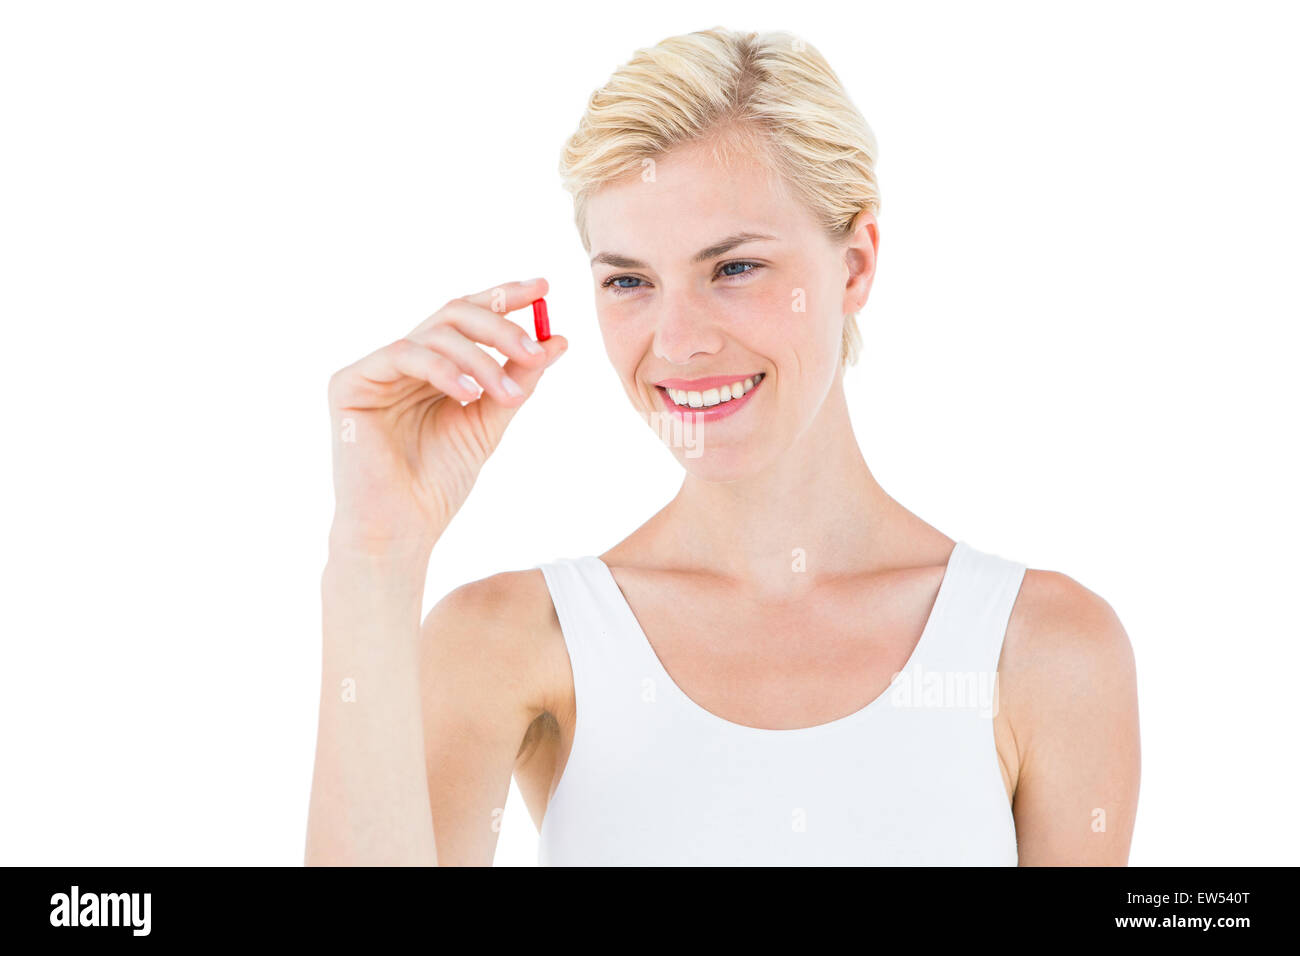 Lächelnde blonde Frau, die rote Pille betrachten Stockfoto